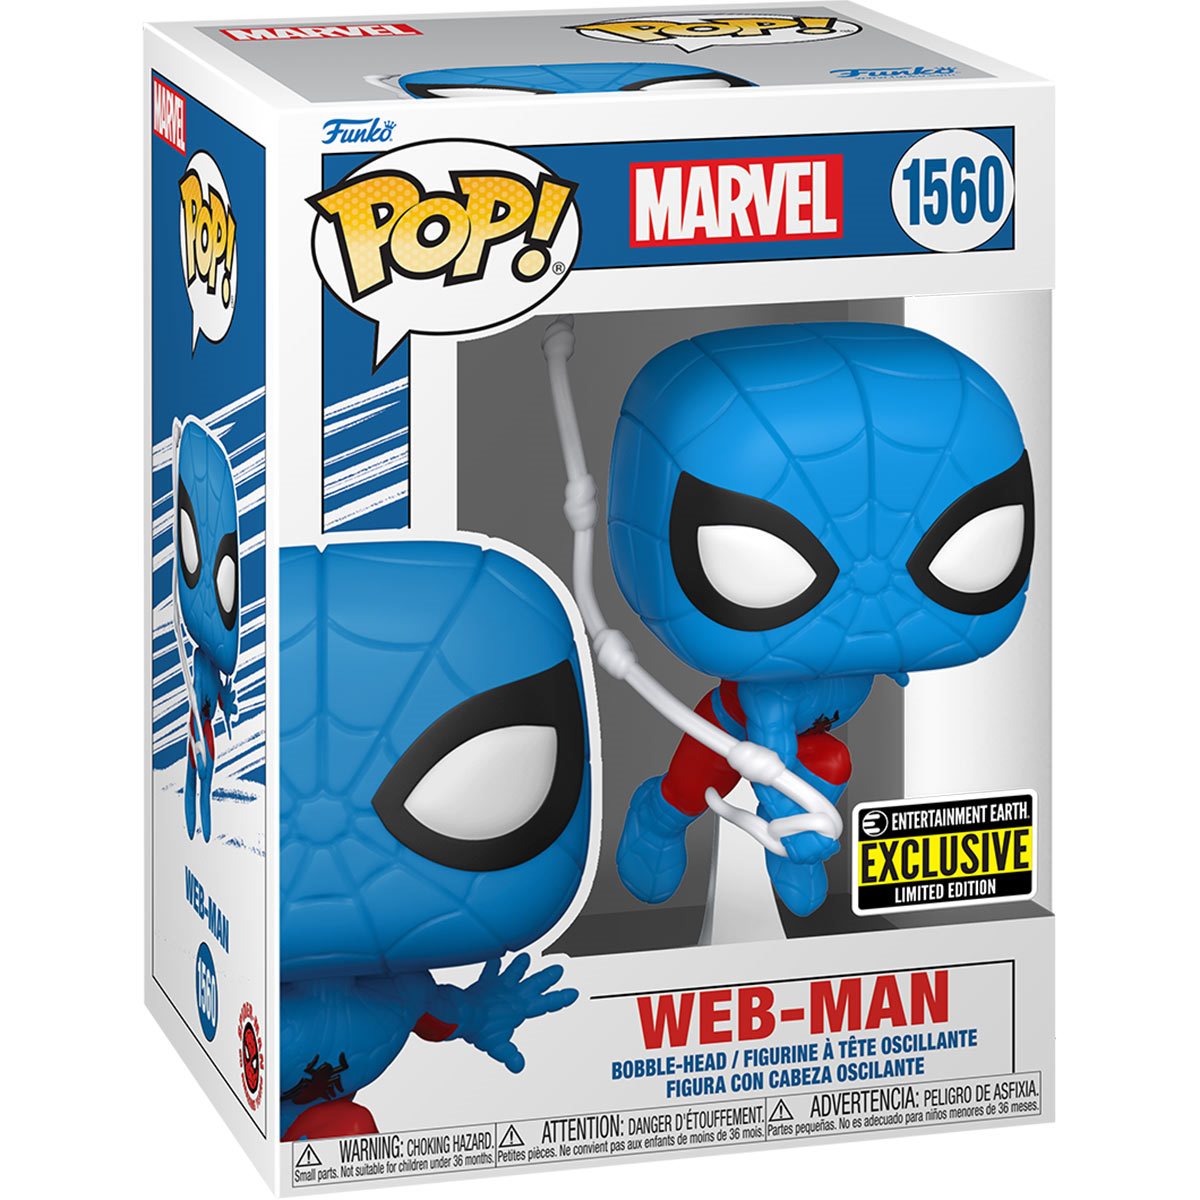 On Hand Web-Man SpiderMan EEE Exclusive Funko Pop!